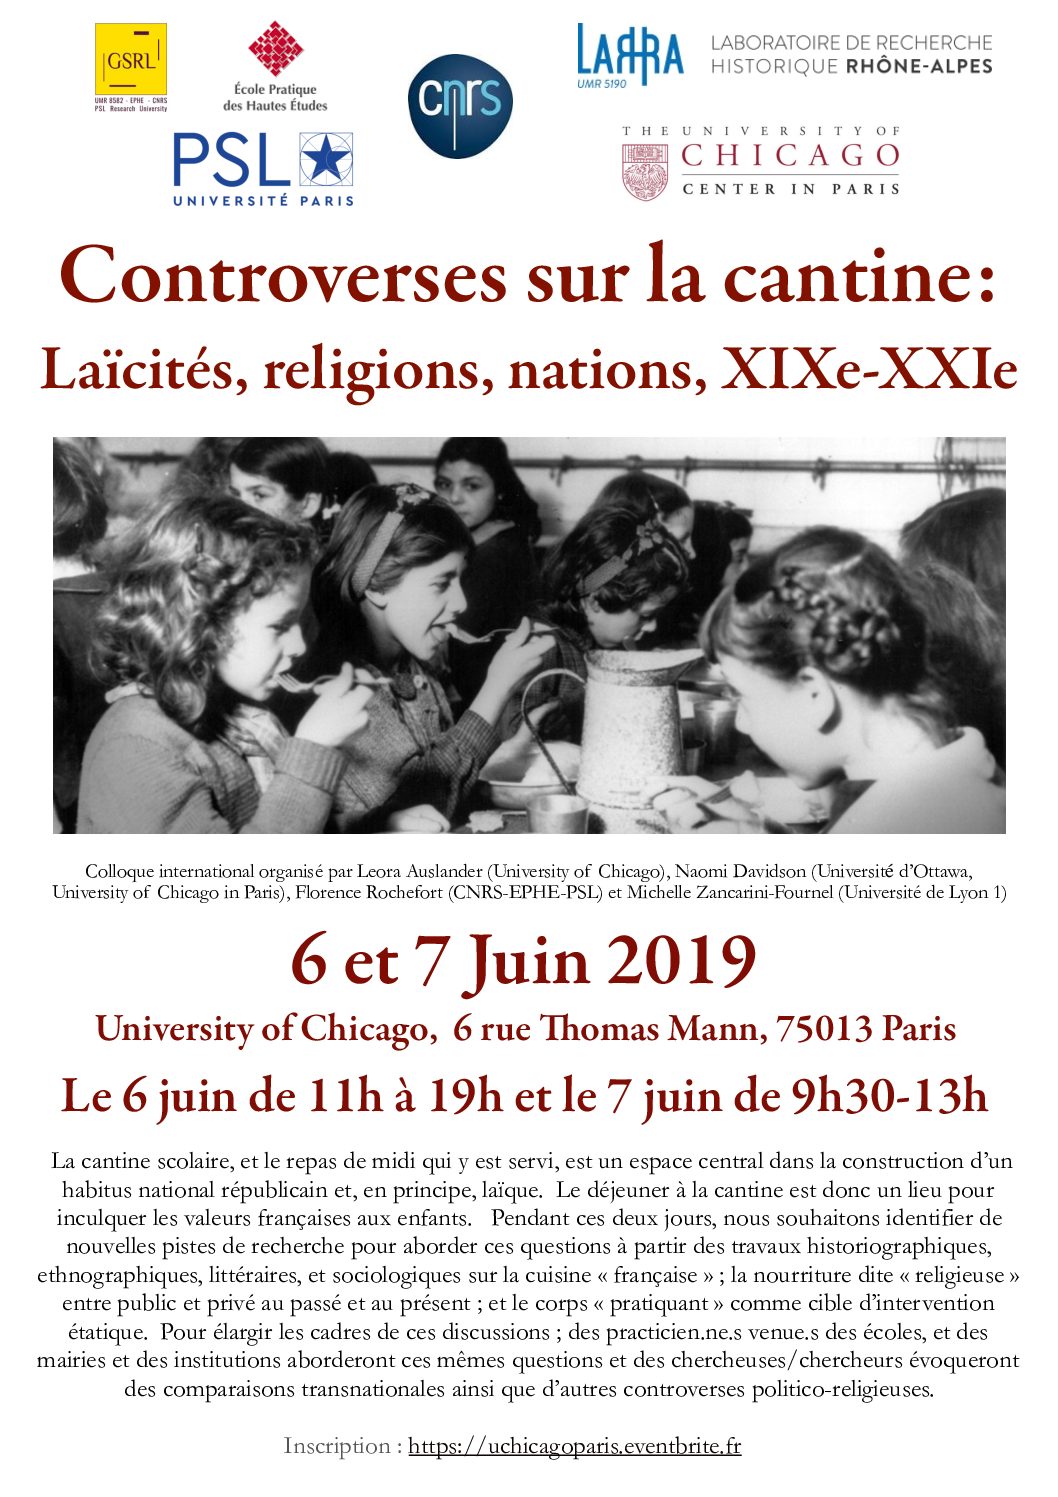 6 et 7 juin 2019 – Colloque : “Controverses sur la cantine : Laïcités, religions, nations, XIXe-XXIe”